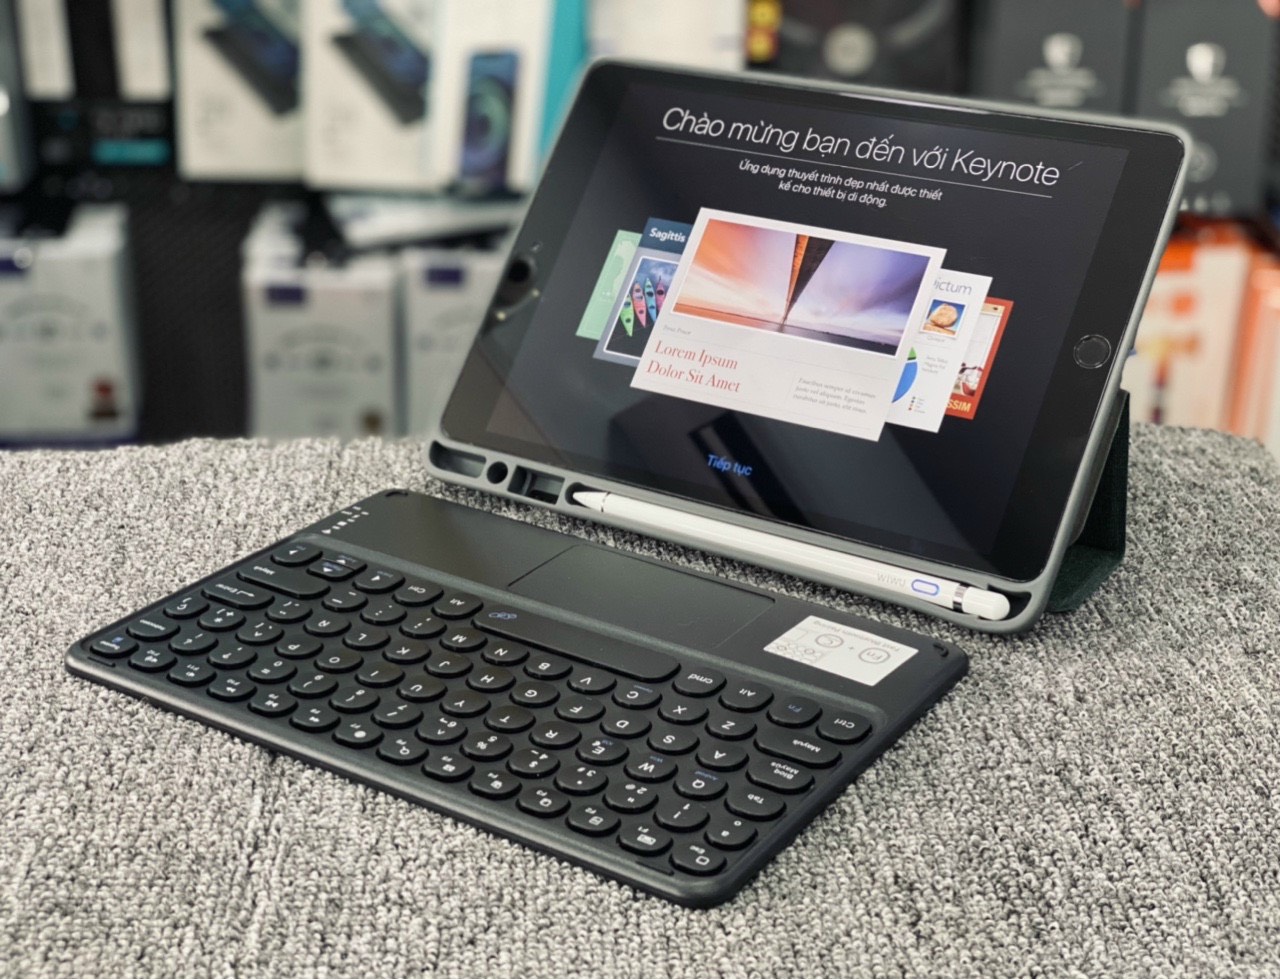 Bàn phím Bluetooth 5.0 không dây tích hợp touchpad cho Cu sac hiệu Coteetci Portable Smart Keyboard (thời lượng pin cực cao 2-4h) - hàng nhập khẩu